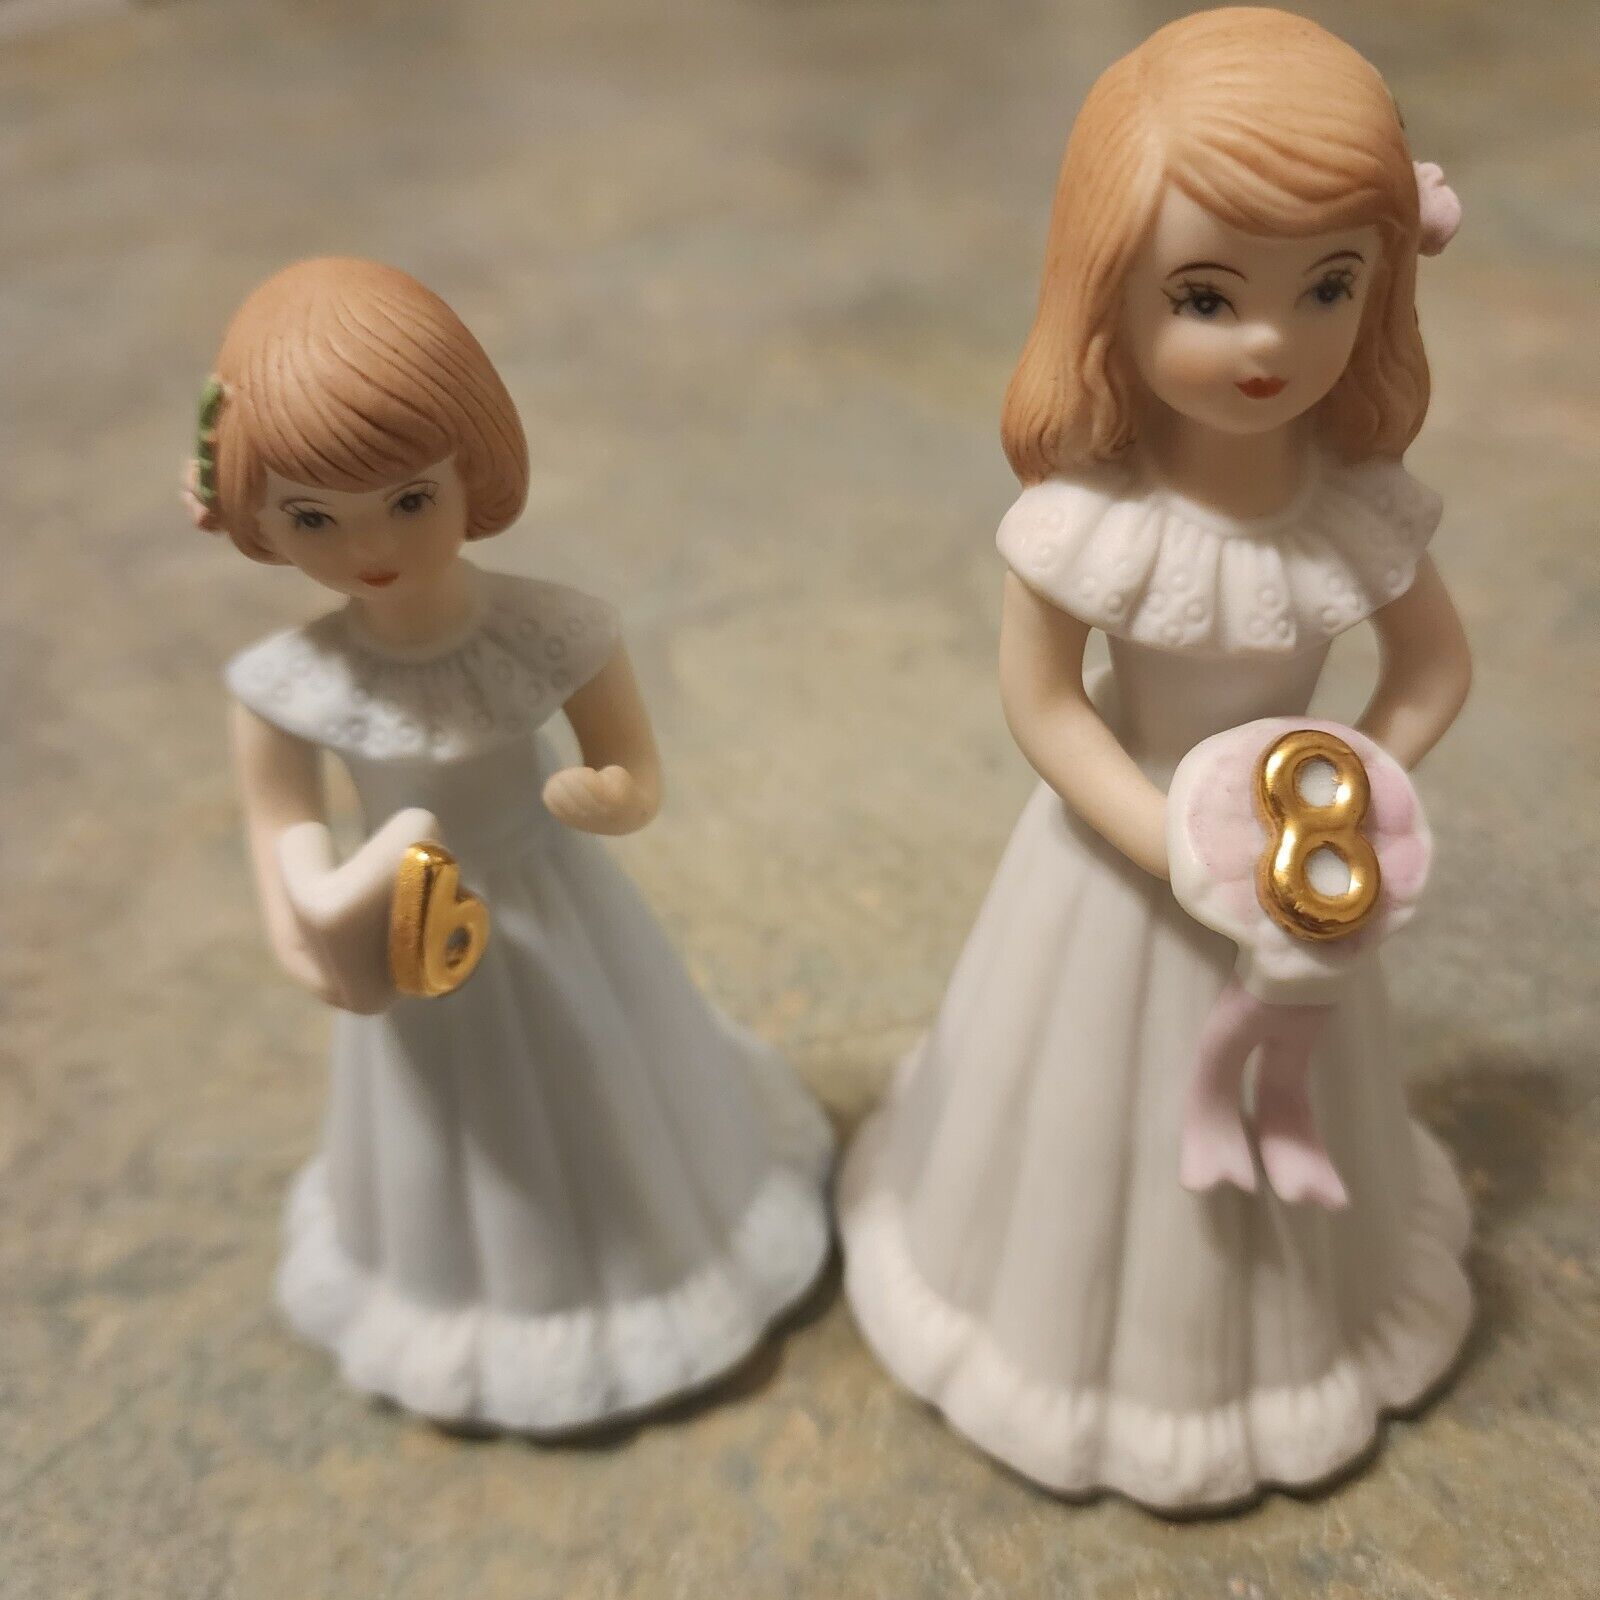 Enesco Growing Up Birthday Girls Figurine Vintage 1982 Blonde Hair Porcelain